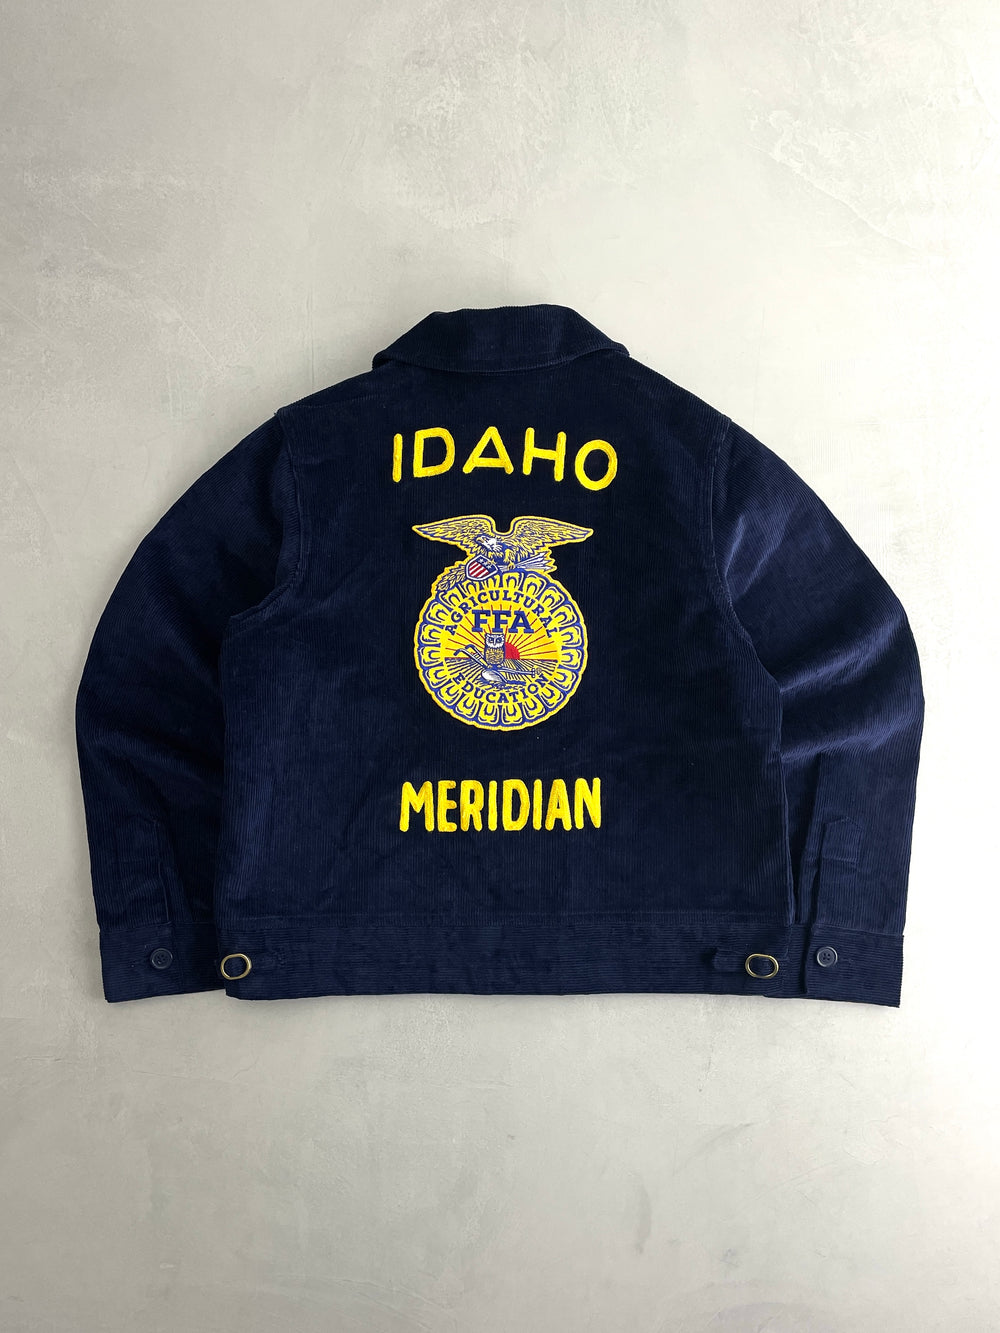 Idaho Meridian  FFA Jacket [S]